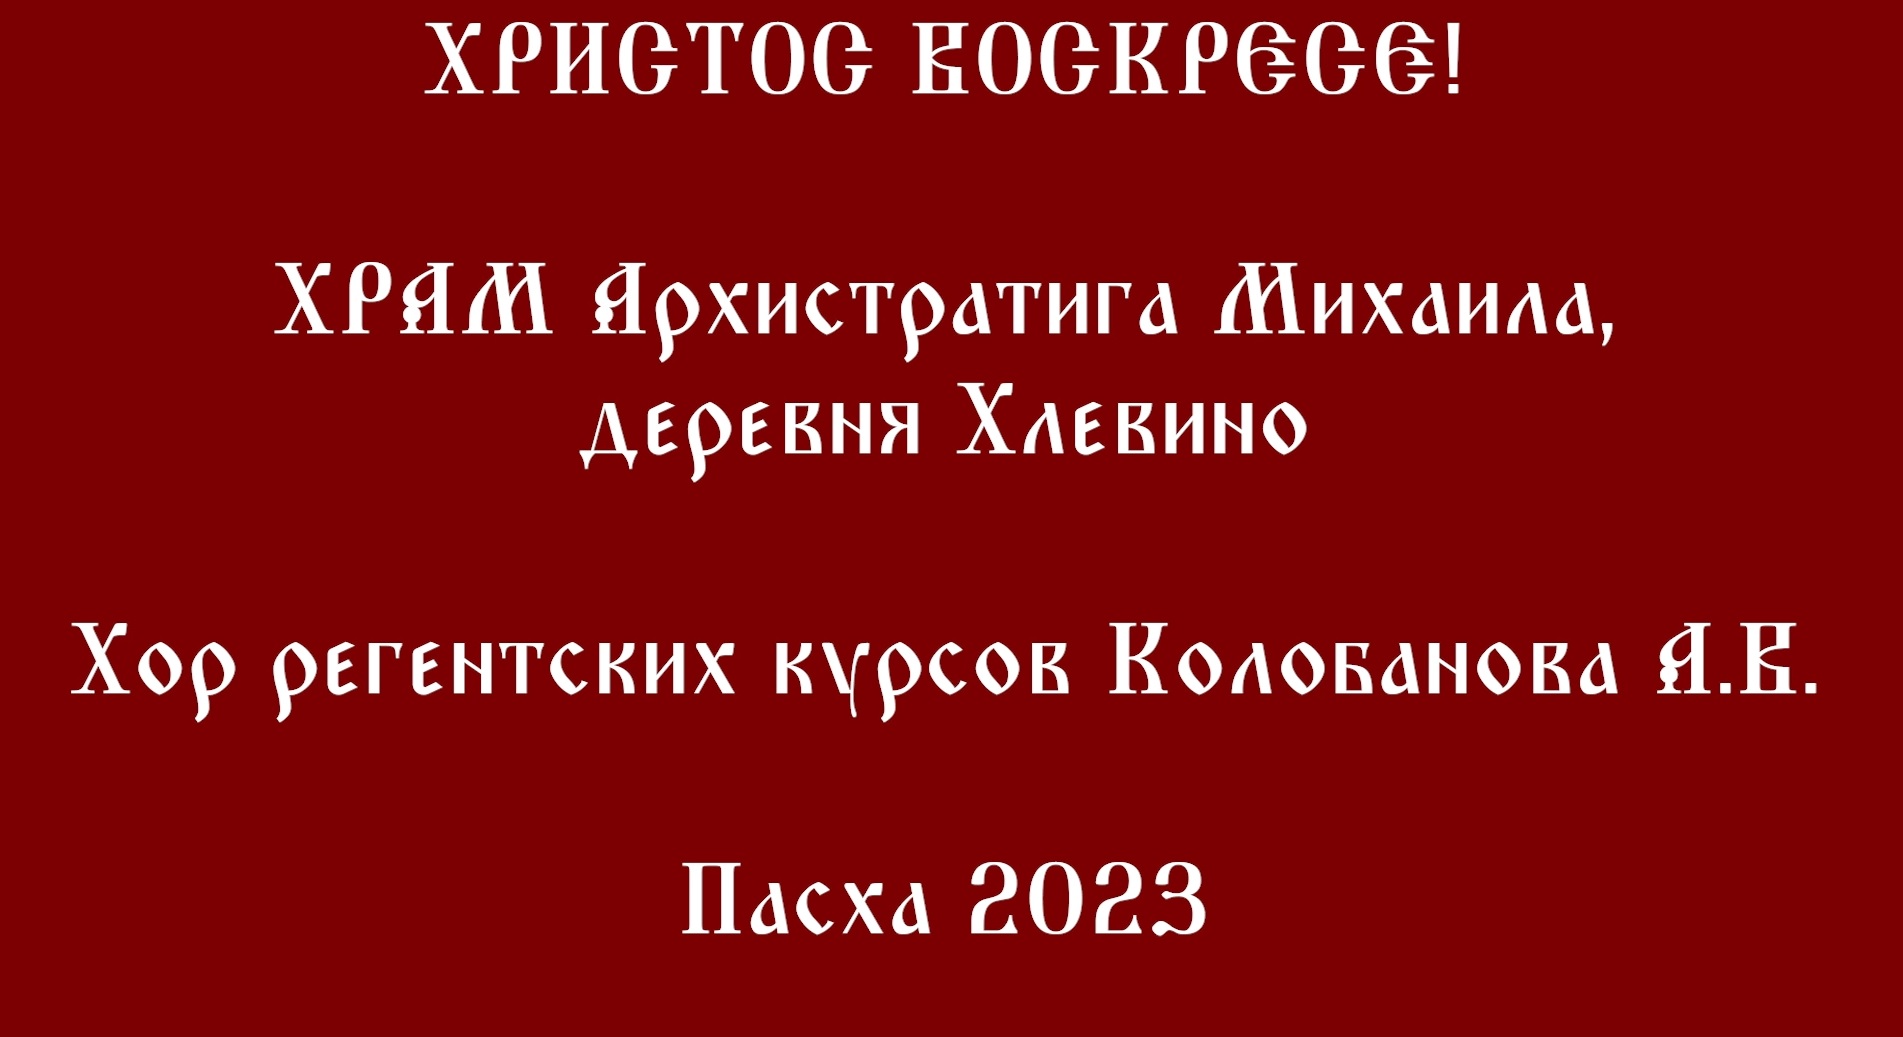 Пасха 2023. Храм Архистратига Михаила в Хлевино.